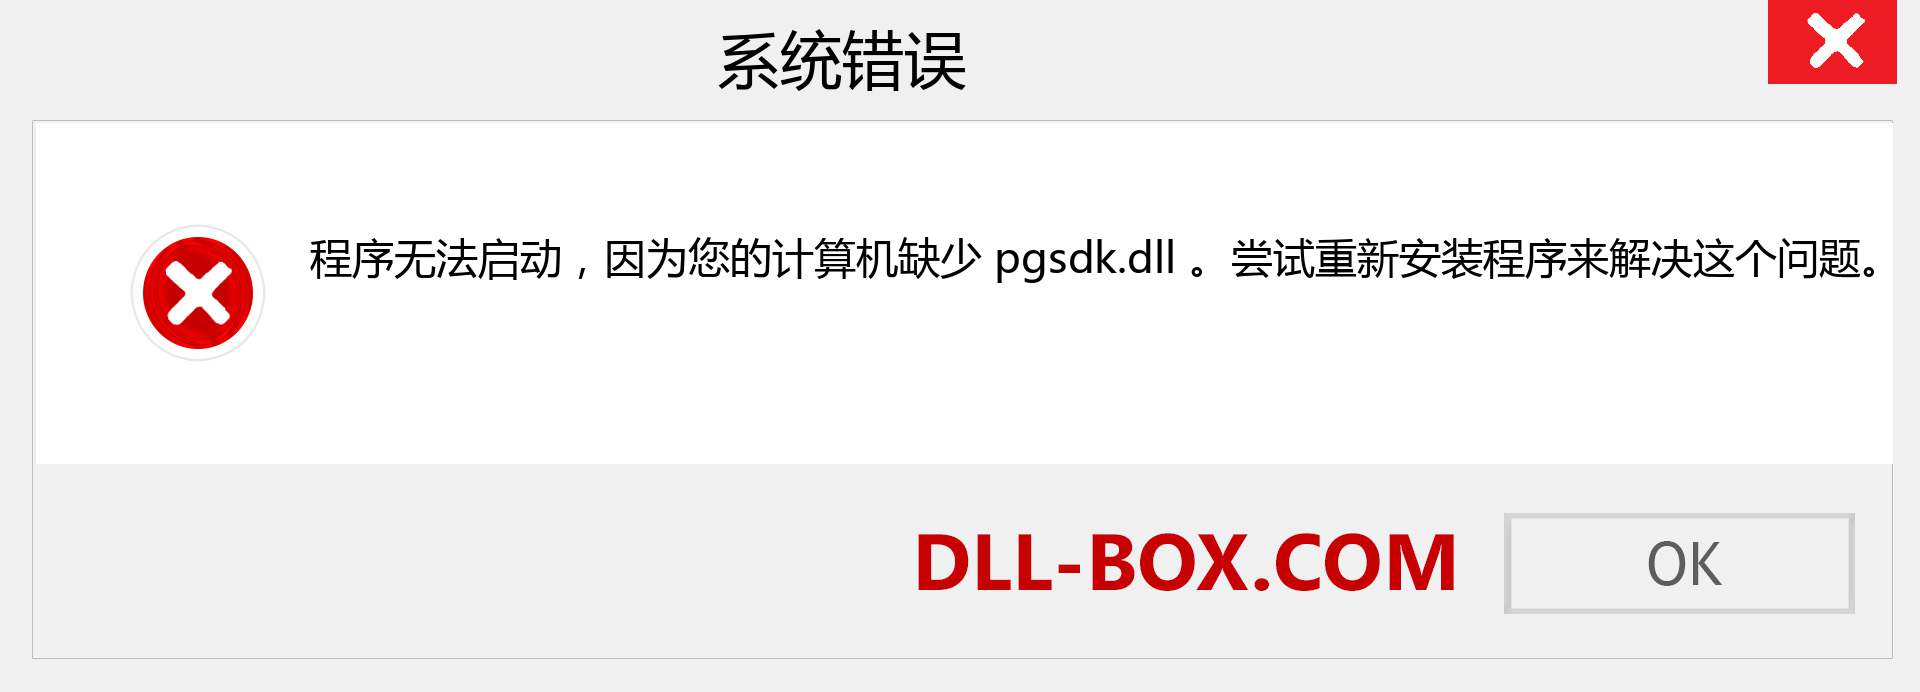 pgsdk.dll 文件丢失？。 适用于 Windows 7、8、10 的下载 - 修复 Windows、照片、图像上的 pgsdk dll 丢失错误